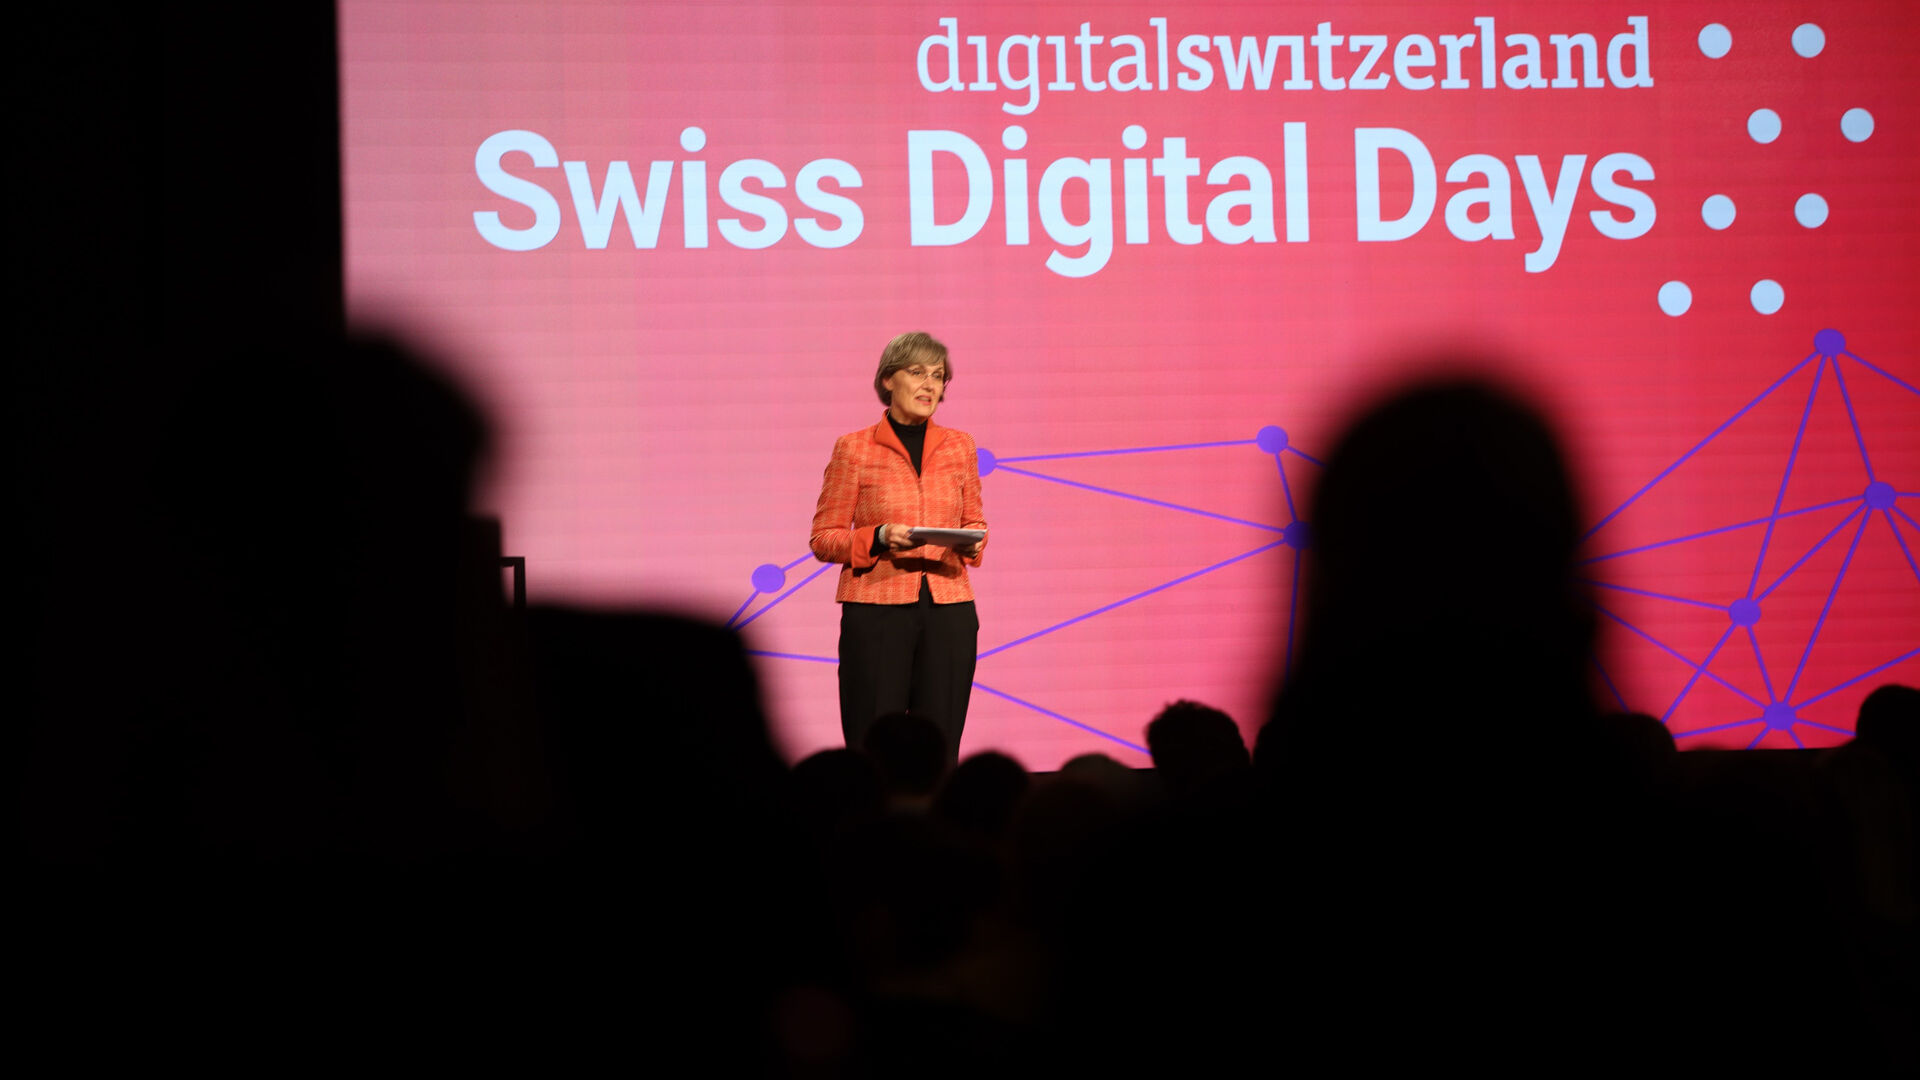 Swiss Digital Days: završni događaj "Swiss Digital Days" 2022. u Freiruumu u Zugu (Cug) 27. oktobra